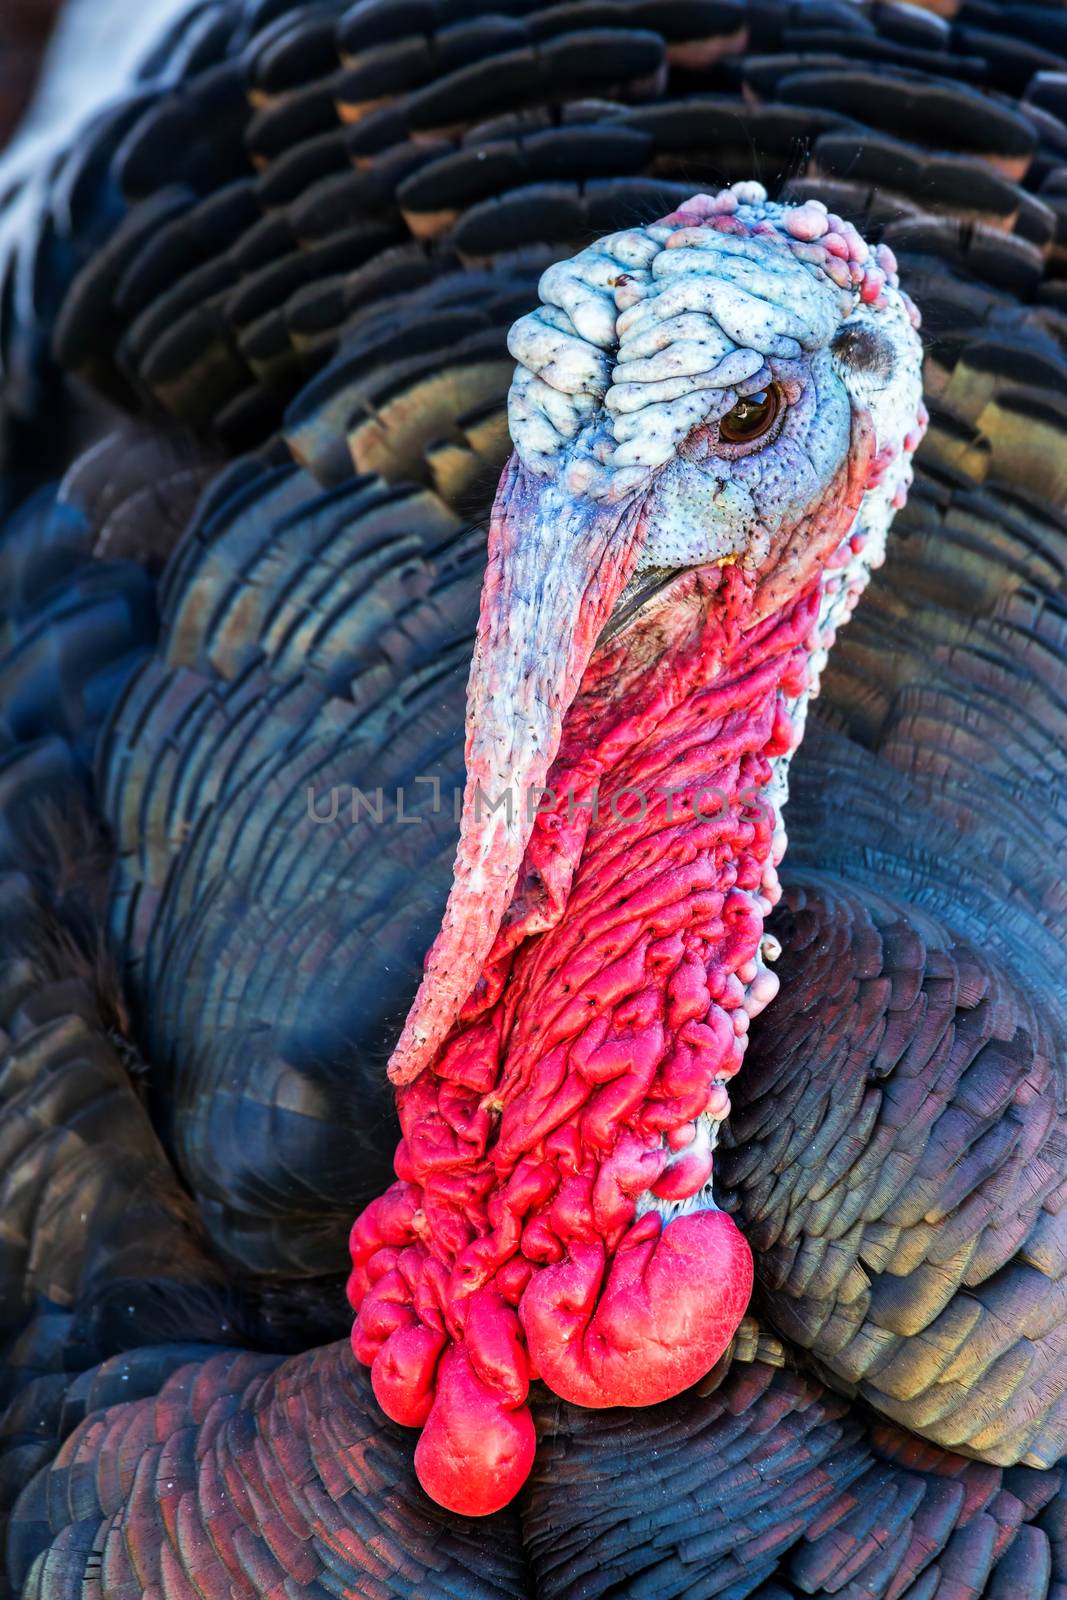 Nice turkey by Digoarpi